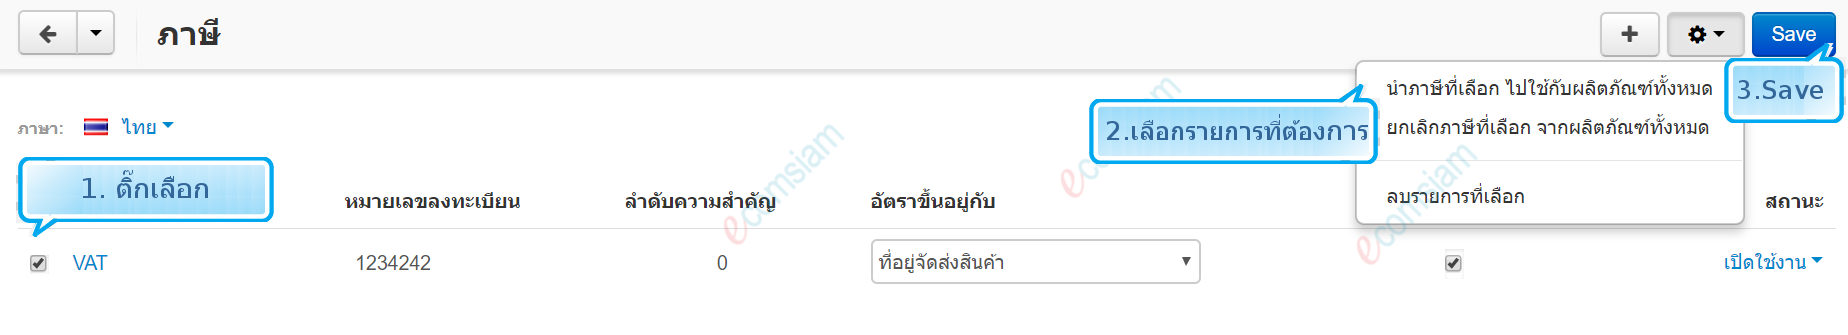 เว็บไซต์สำเร็จรูปไทย - คู่มือร้านออนไลน์ - การจัดการร้านออนไลน์-กำหนดภาษี tax